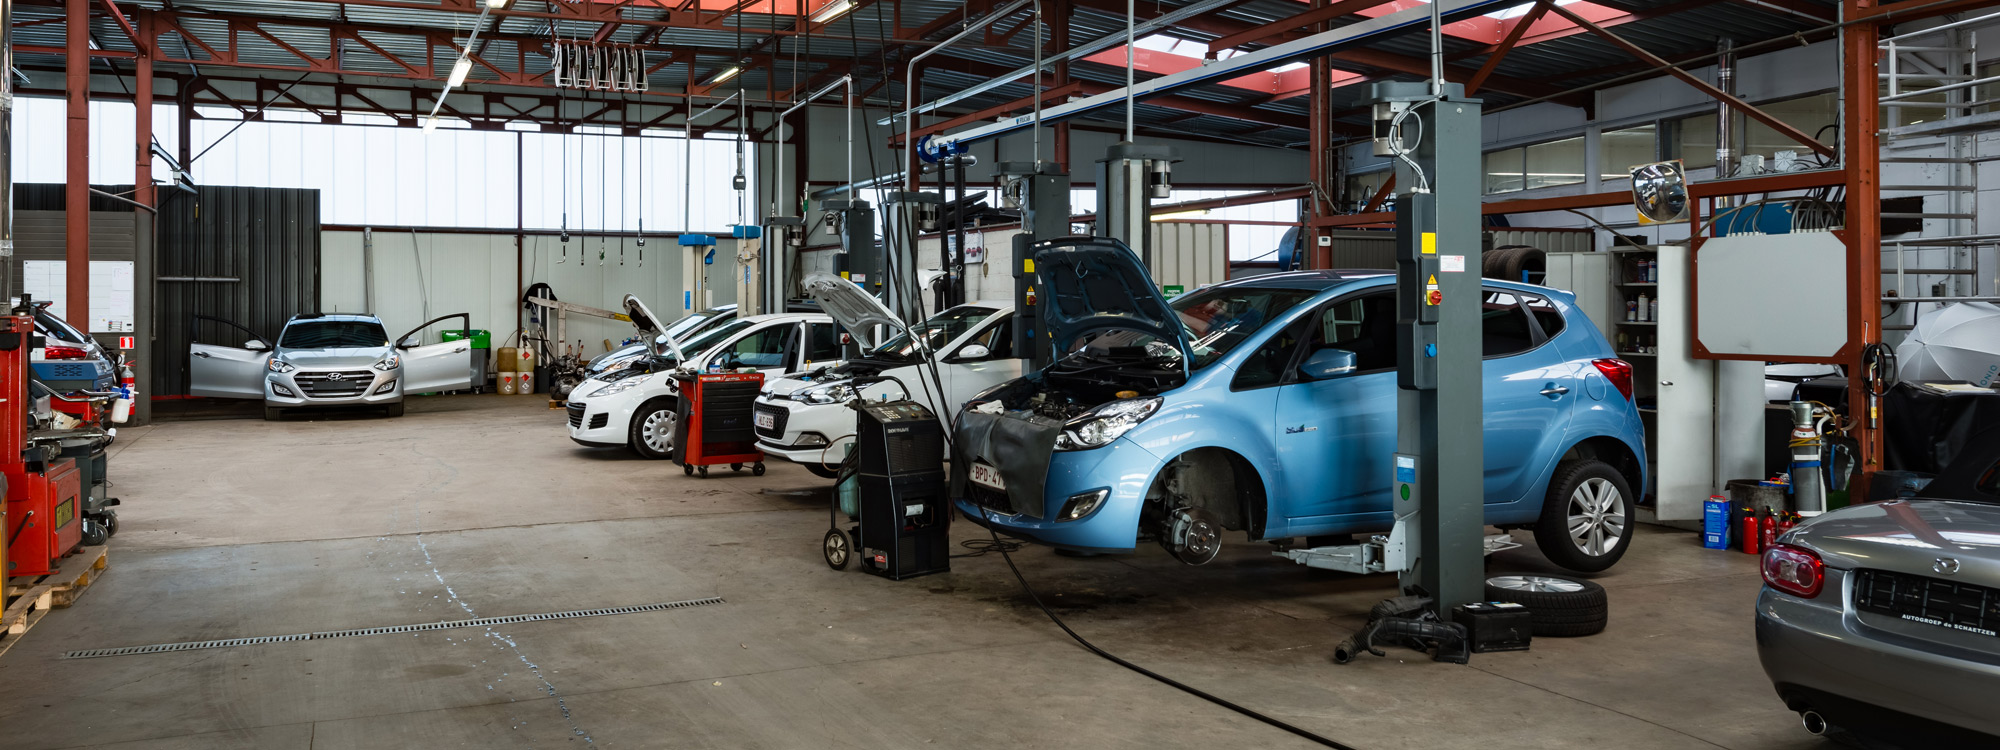 entretien Hyundai  Autogroep de Schaetzen  Hasselt